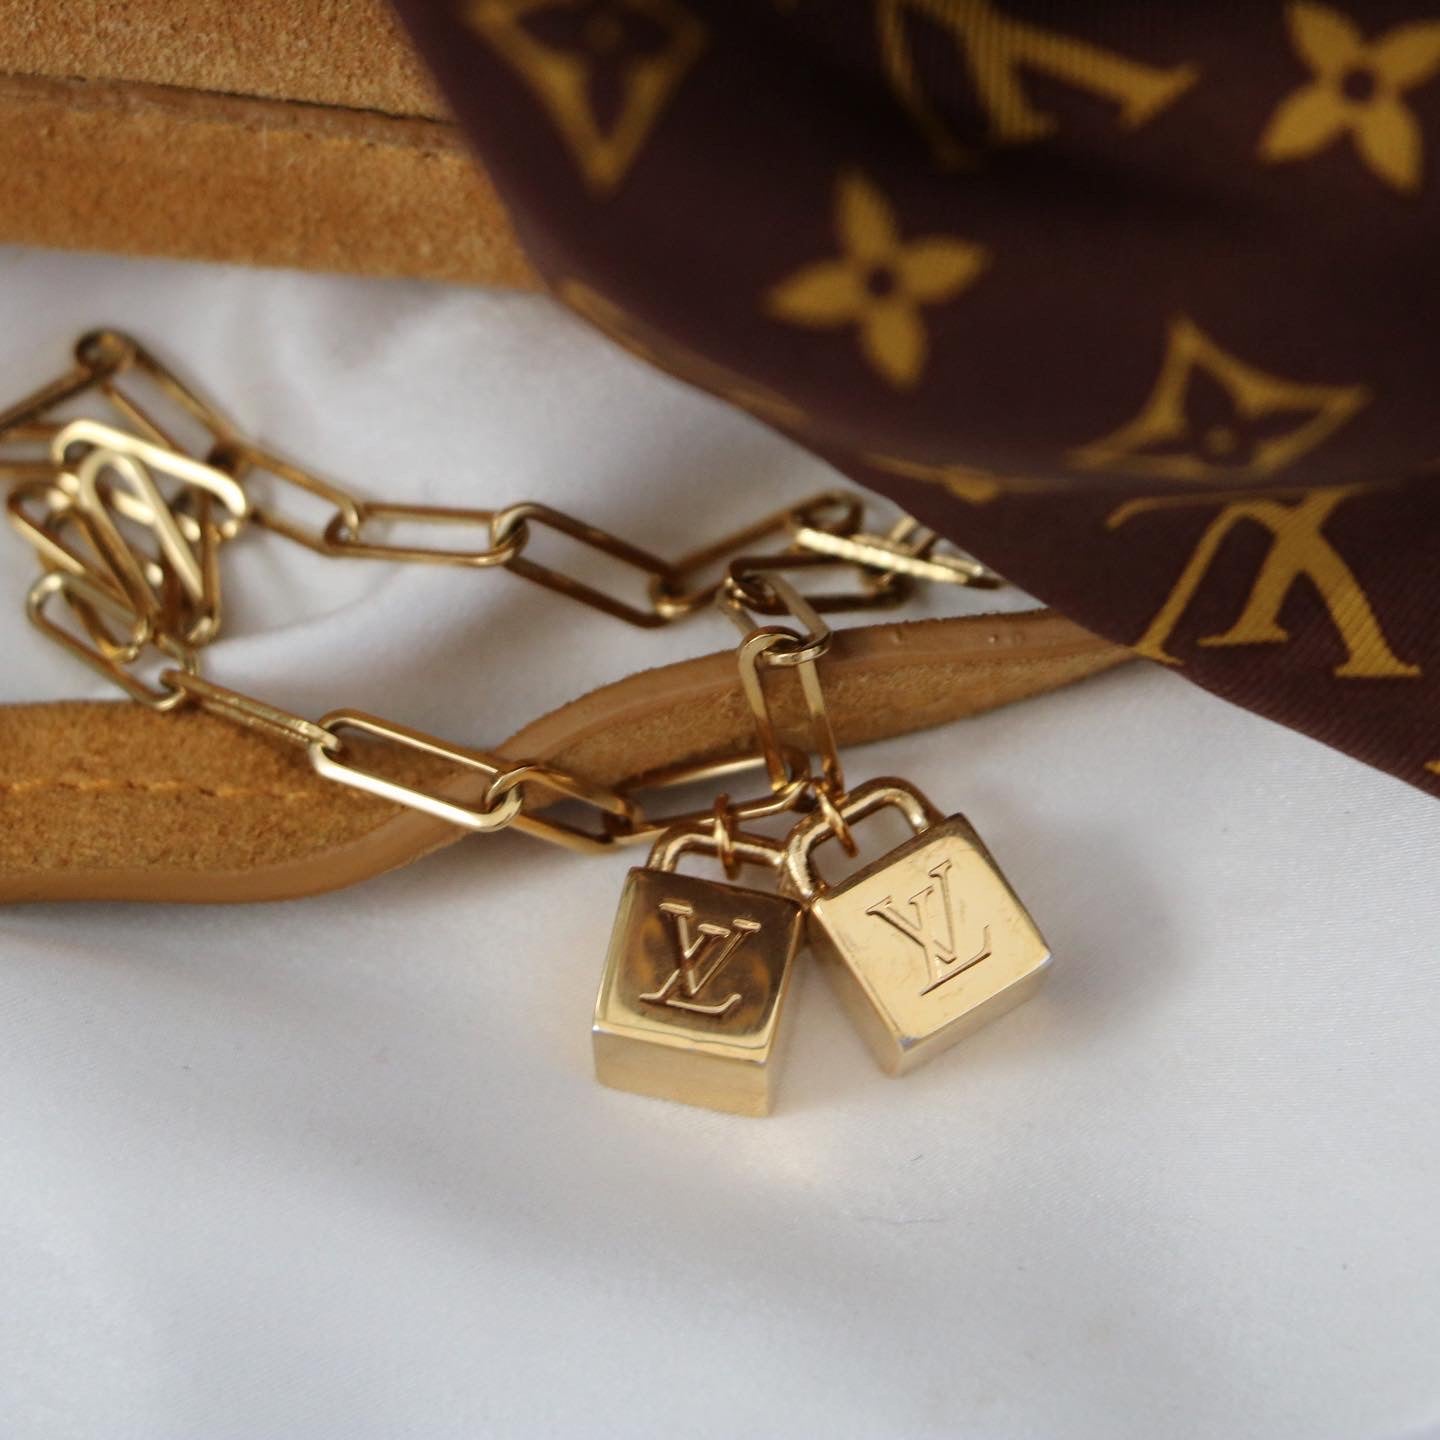 Collier Louis Vuitton cadenas avec chaîne unique pour lui